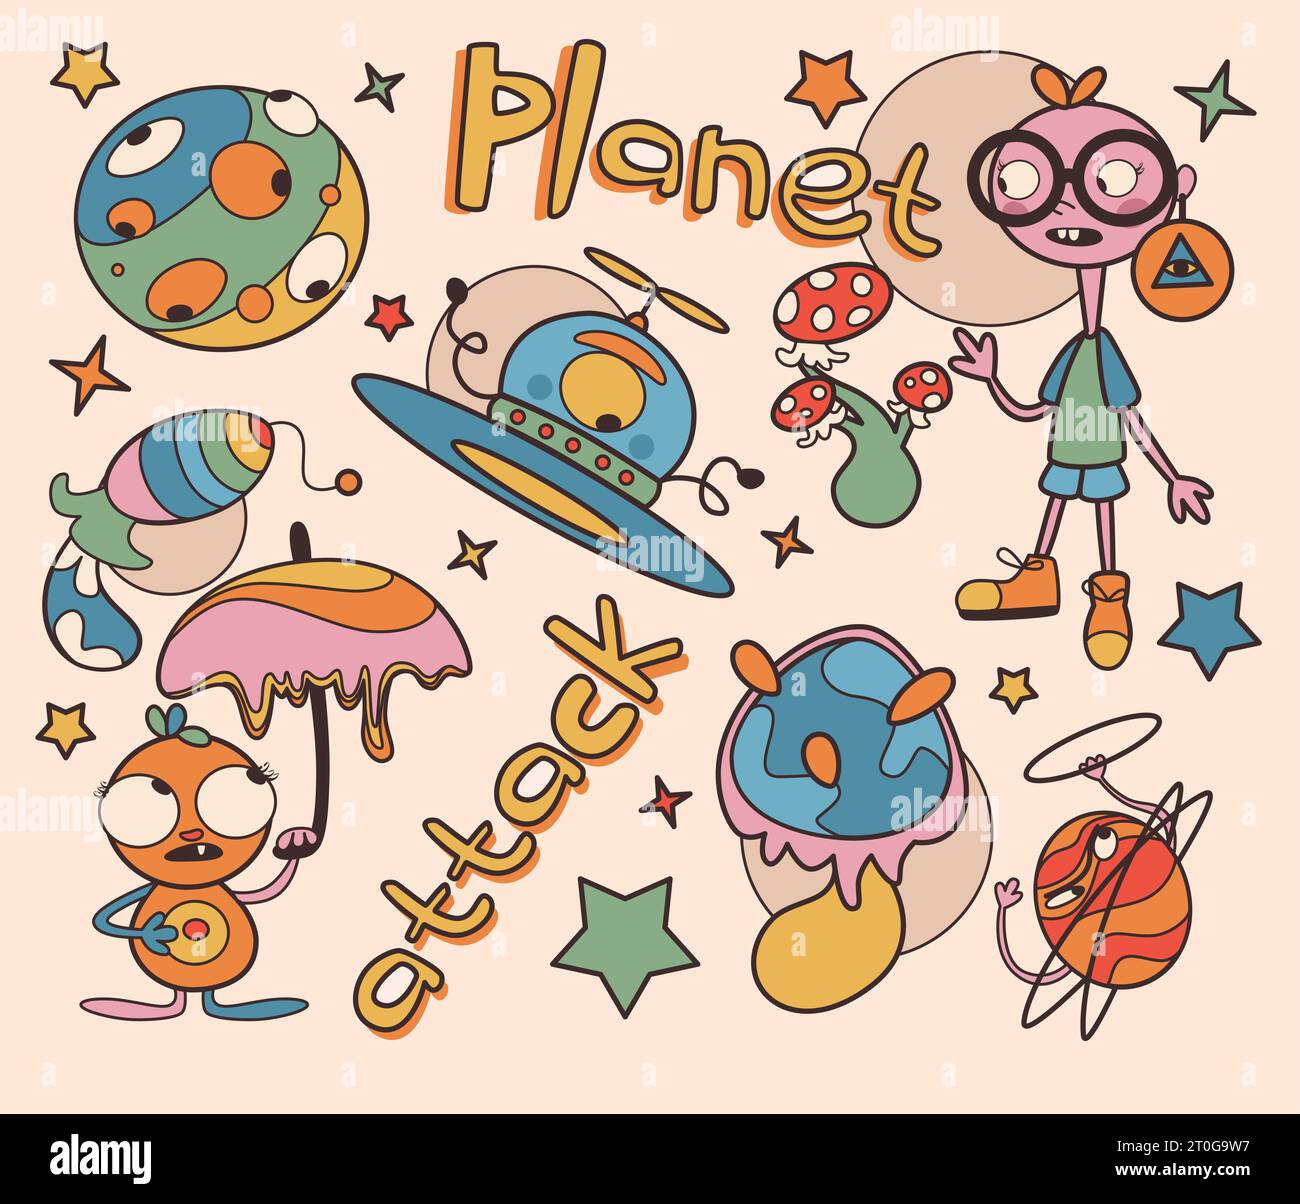 Sfondo vaporwave con creature astratte e oggetti isolati su sfondo beige. Illustrazione vettoriale di pianeti alieni, razzo e spaziecra Illustrazione Vettoriale